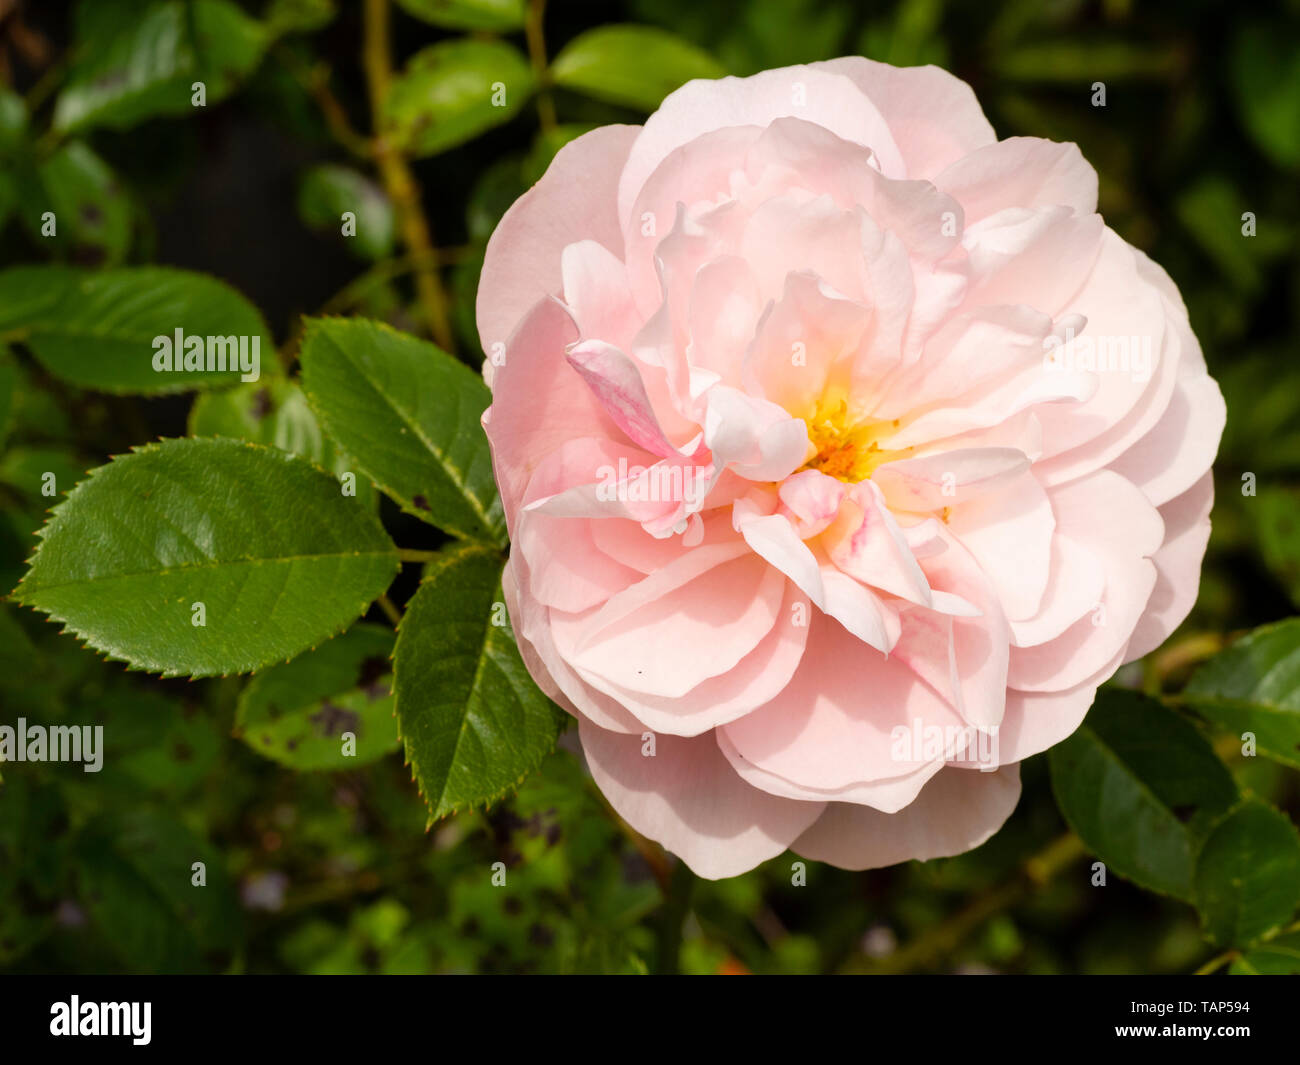 Single flower of the pale pink double floribunda rose, Rosa 'Natasha Richardson' Stock Photo